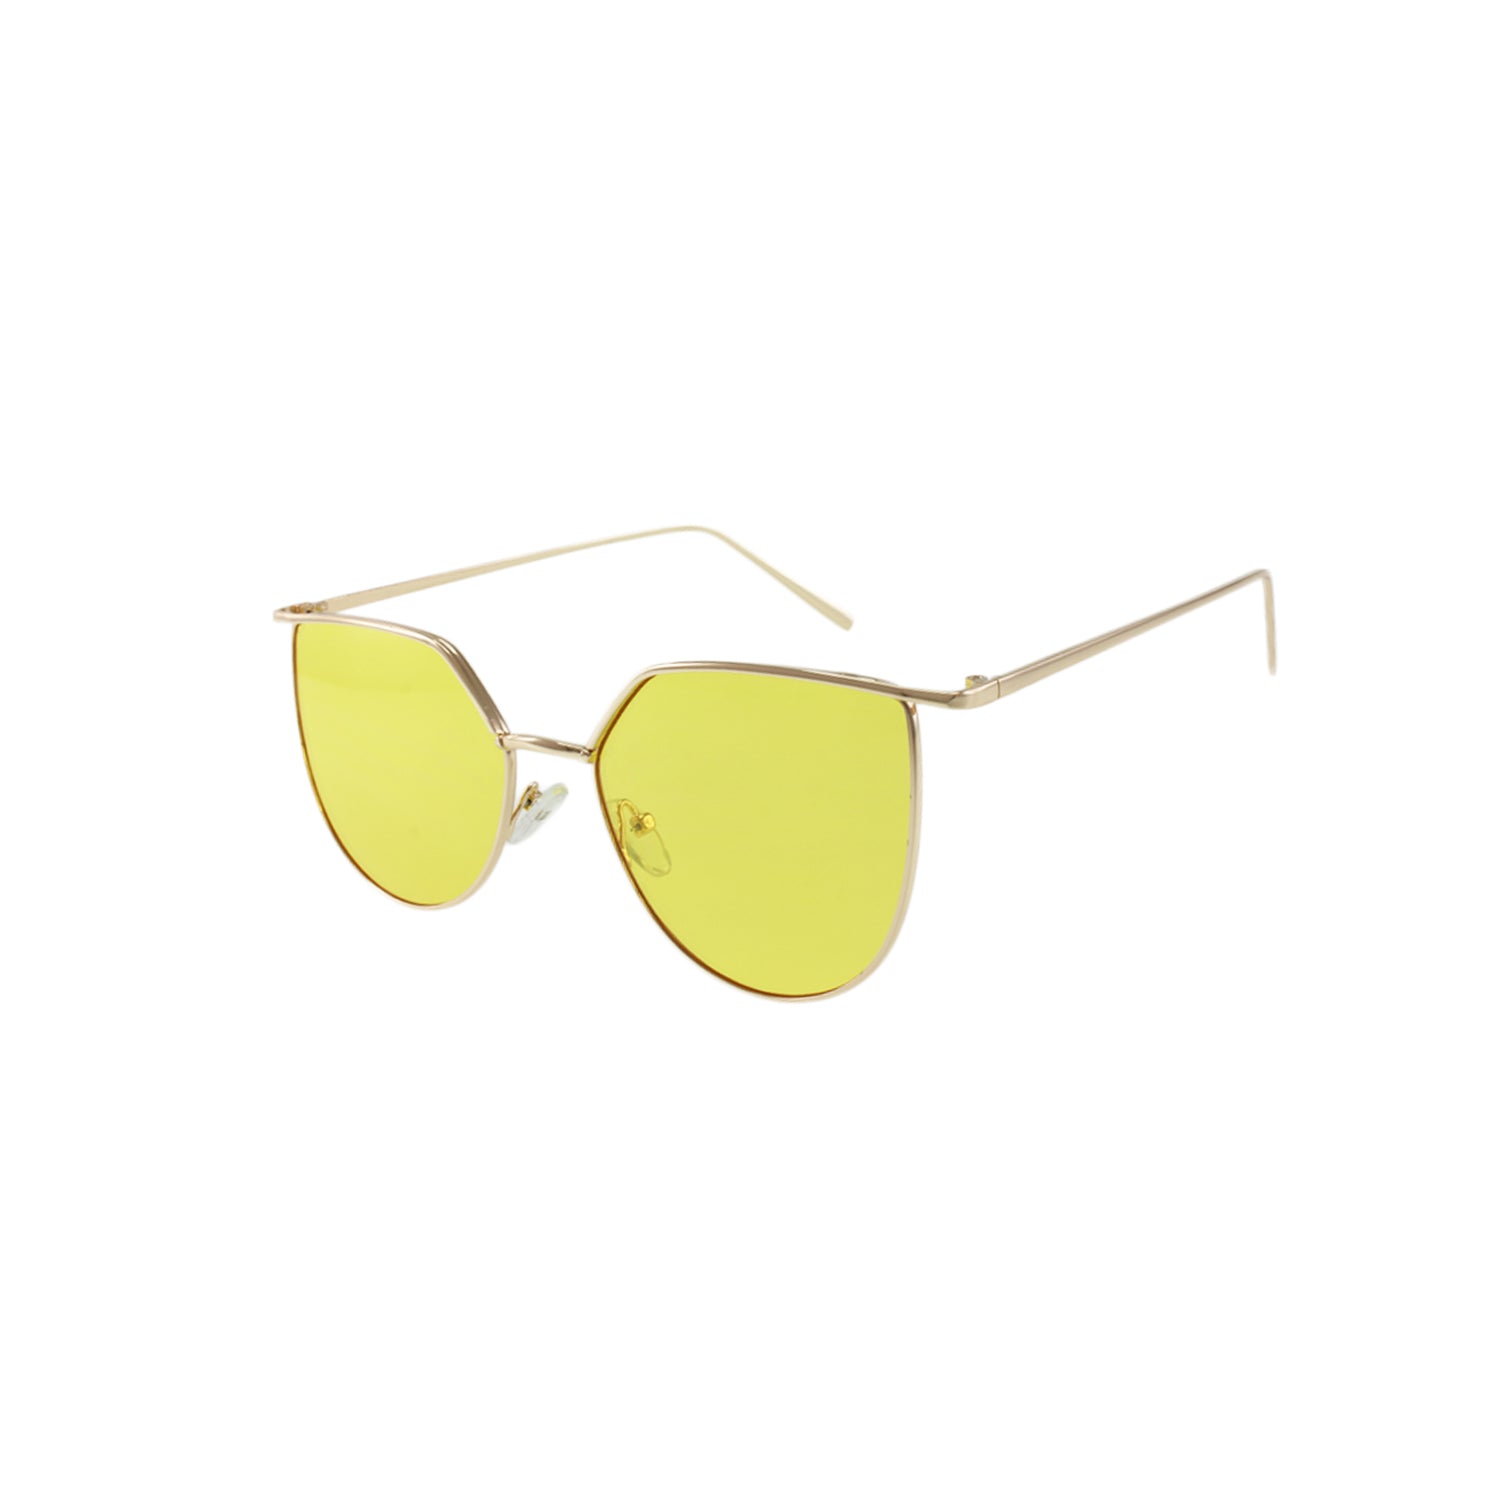 نظارات Jase New York Alton الشمسية باللون الأصفر